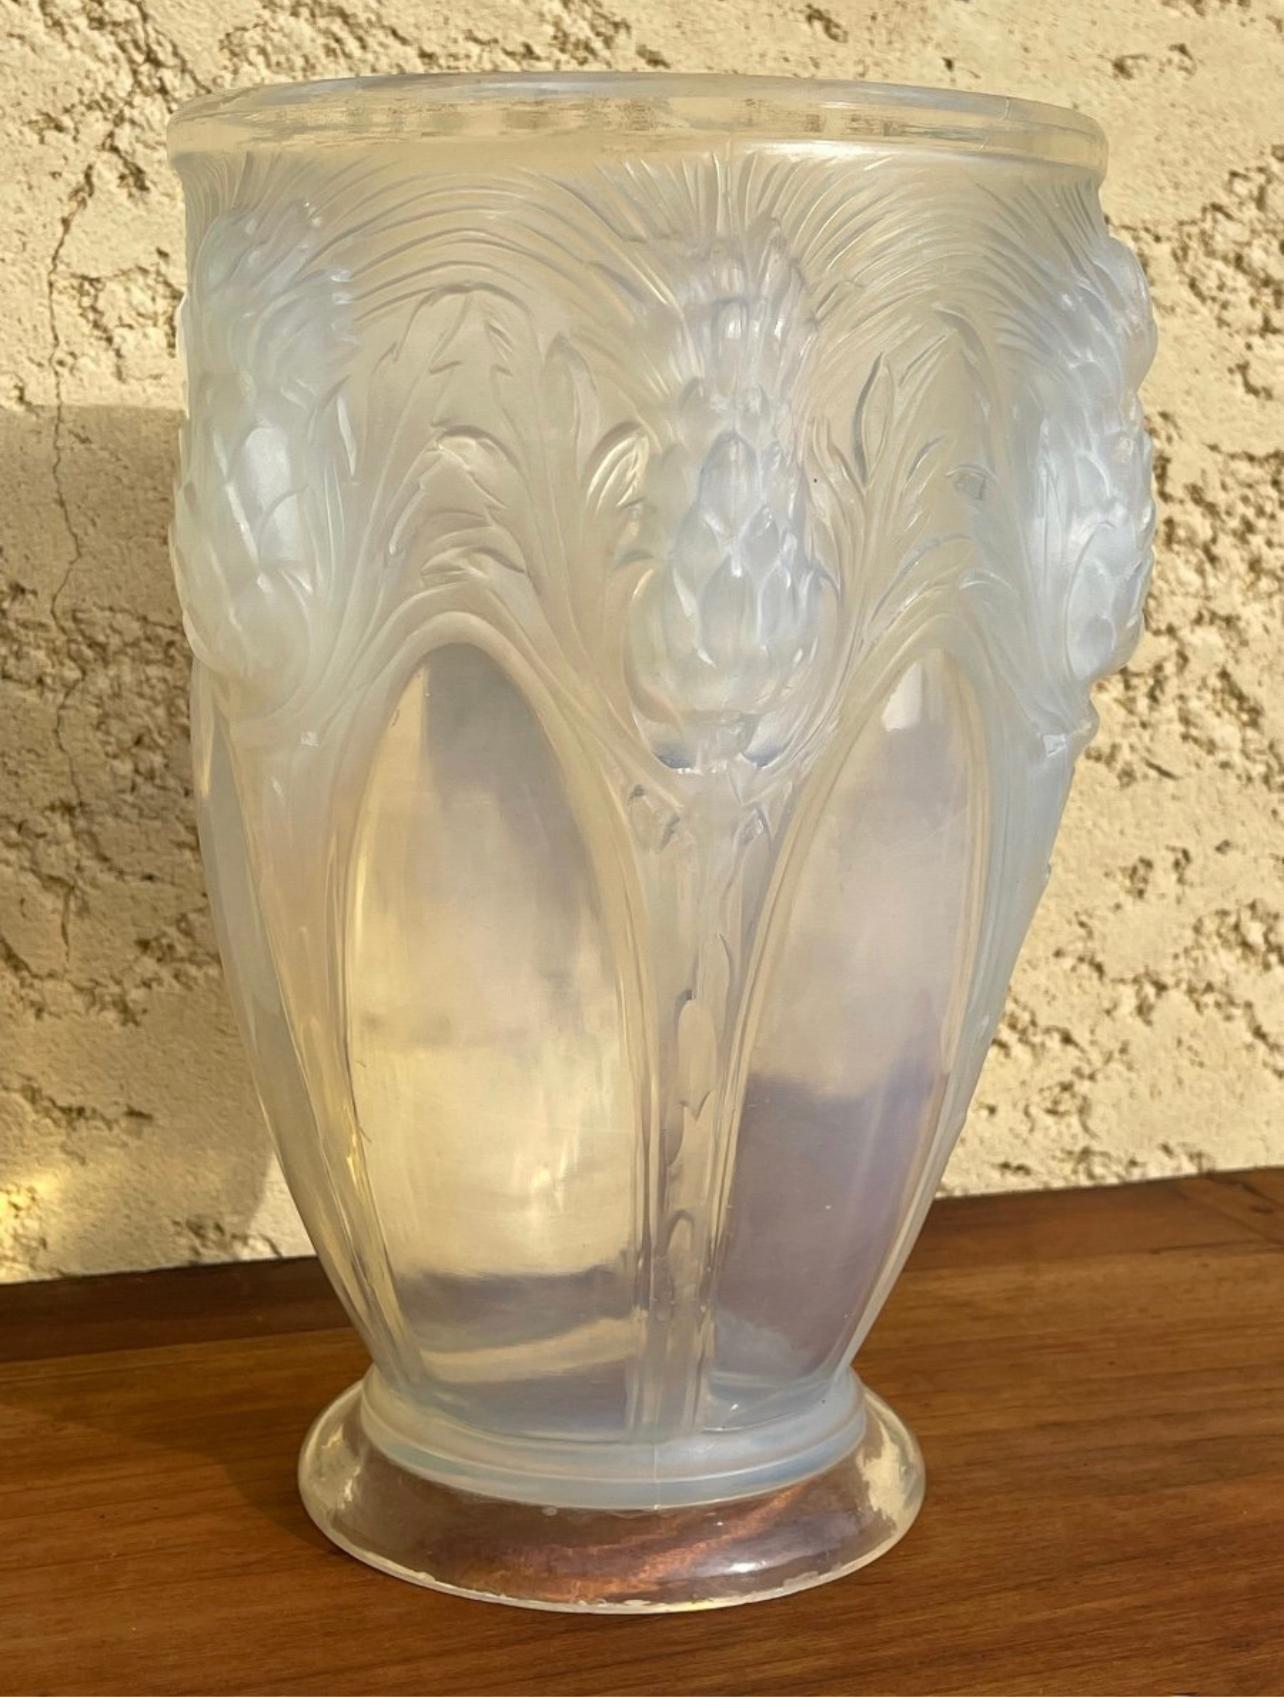 Vase en verre moulé et pressé bleu opalescent décoré de chardons signé Verlys France sous les pieds du vase. Il est en très bon état.

Dimensions
Hauteur : 25 cm
Diamètre du col : 16 cm